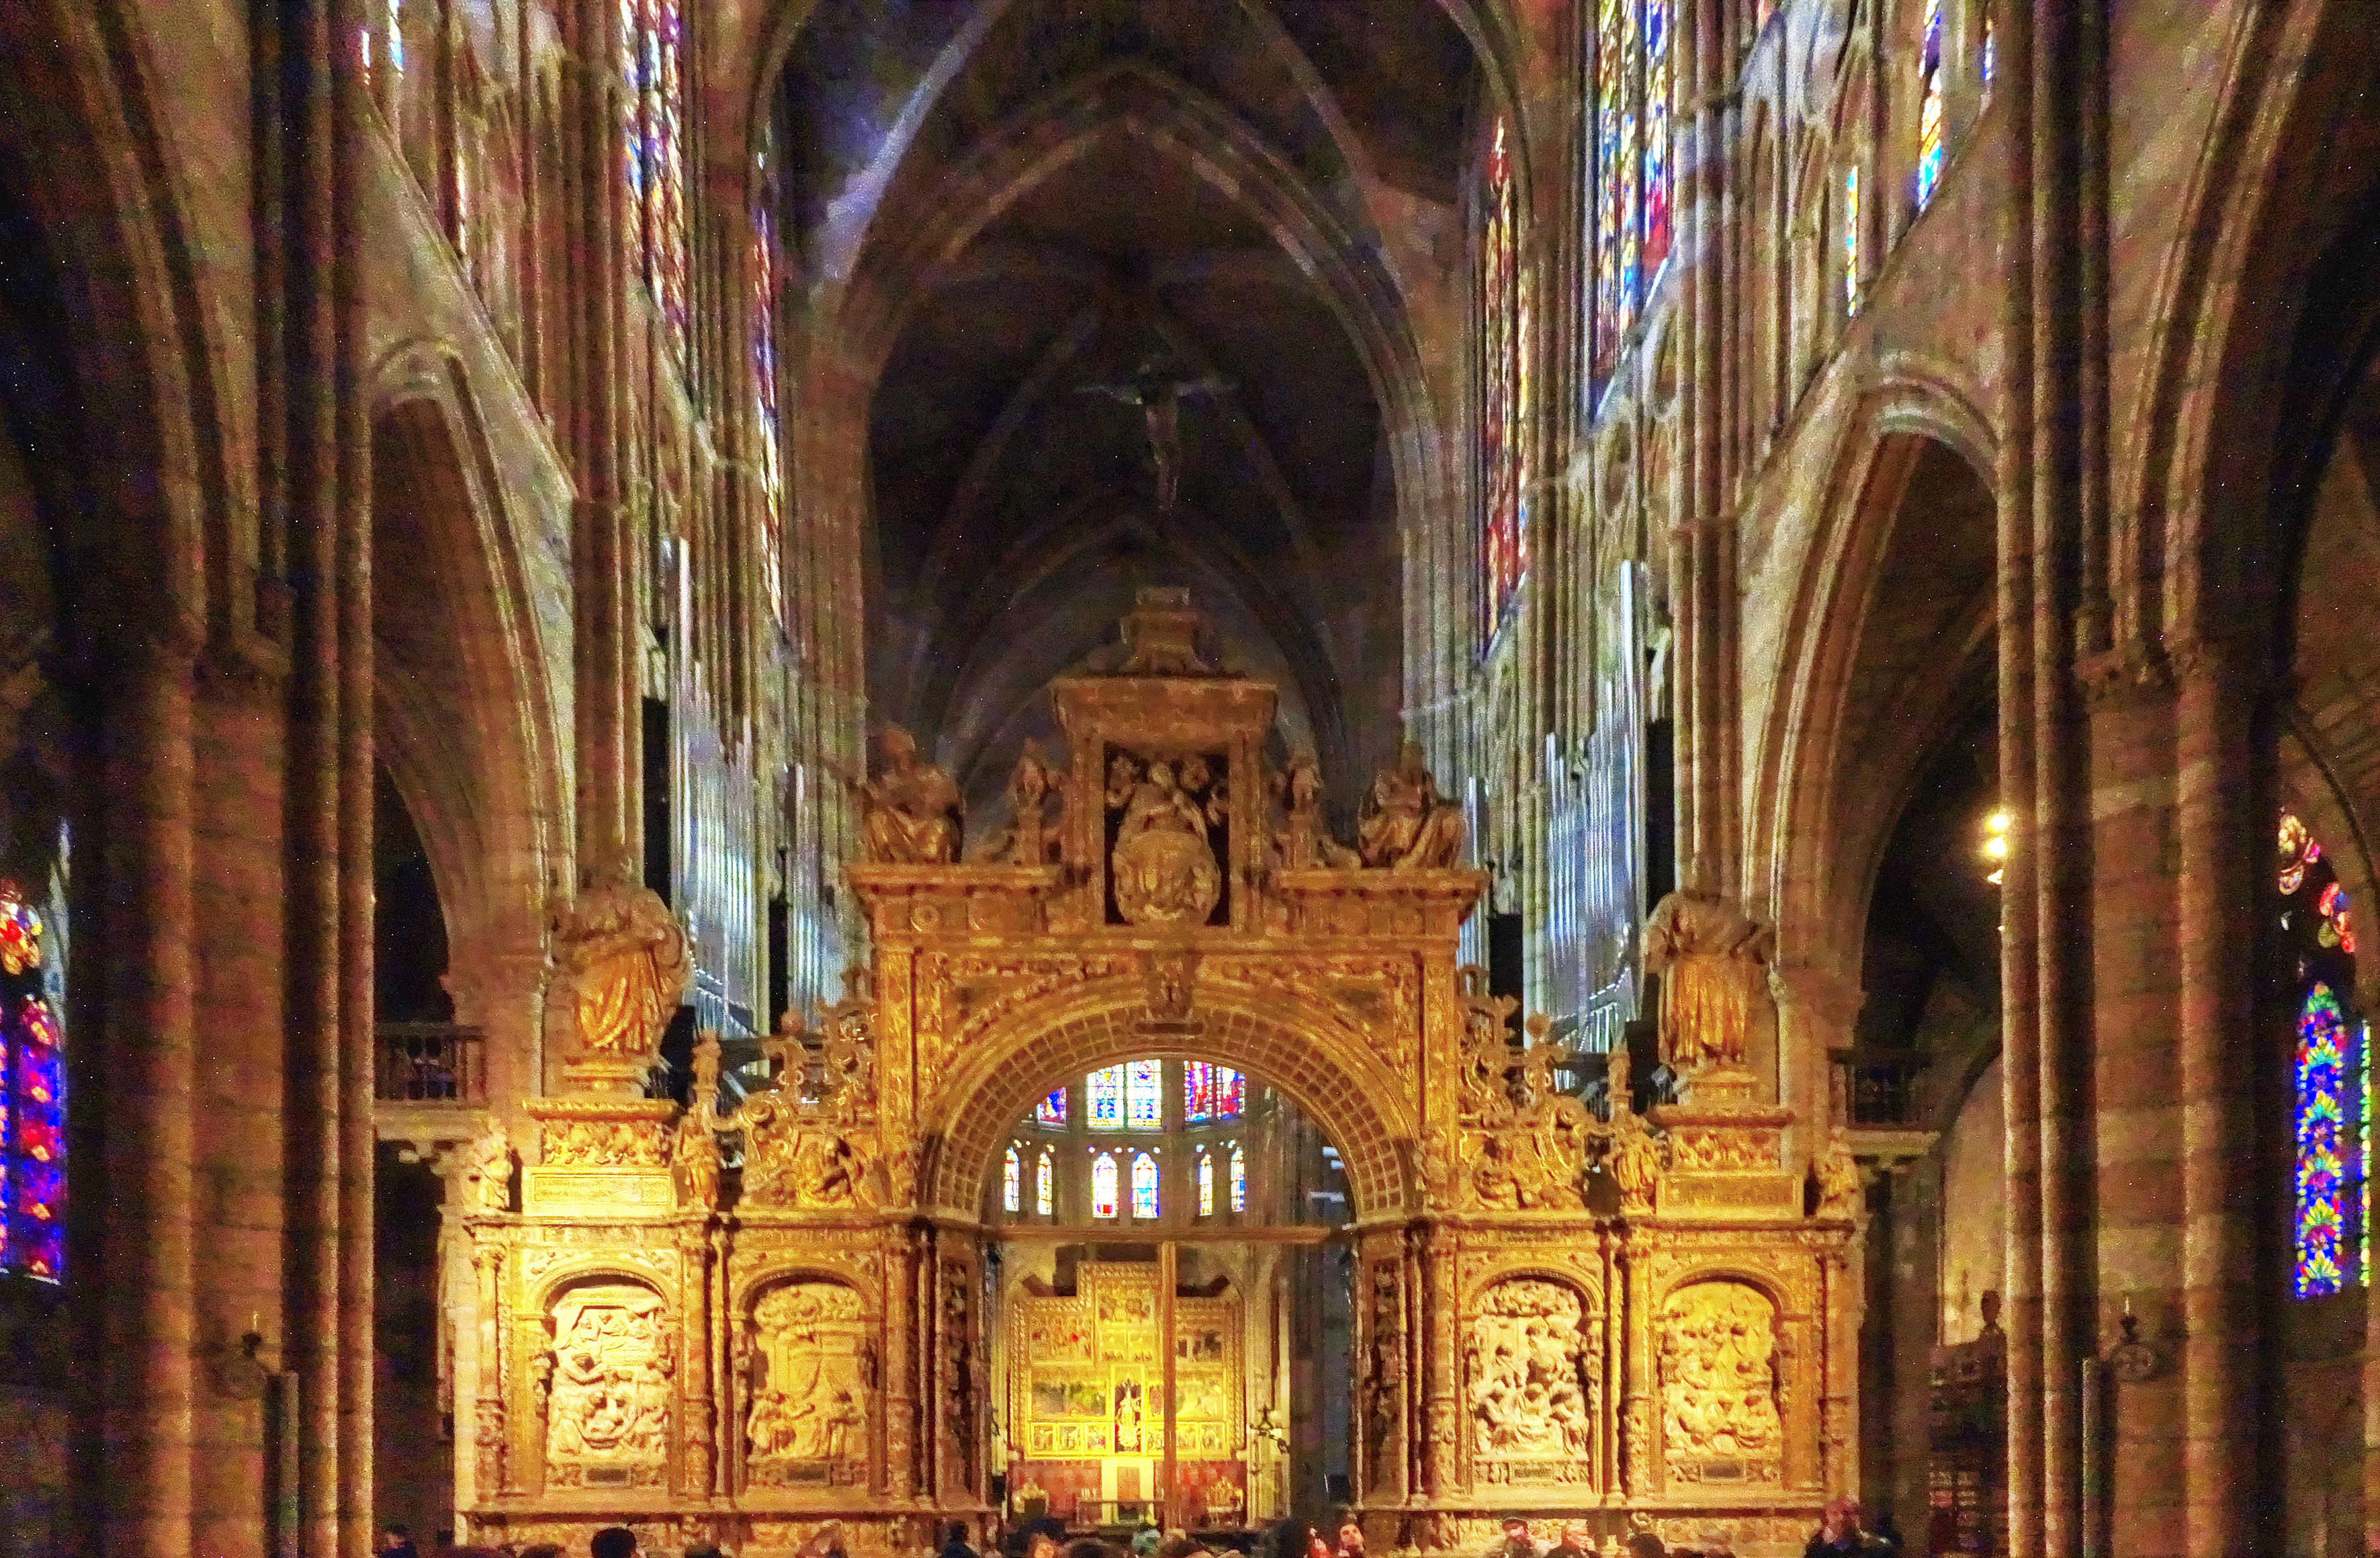 Cathédrale de León